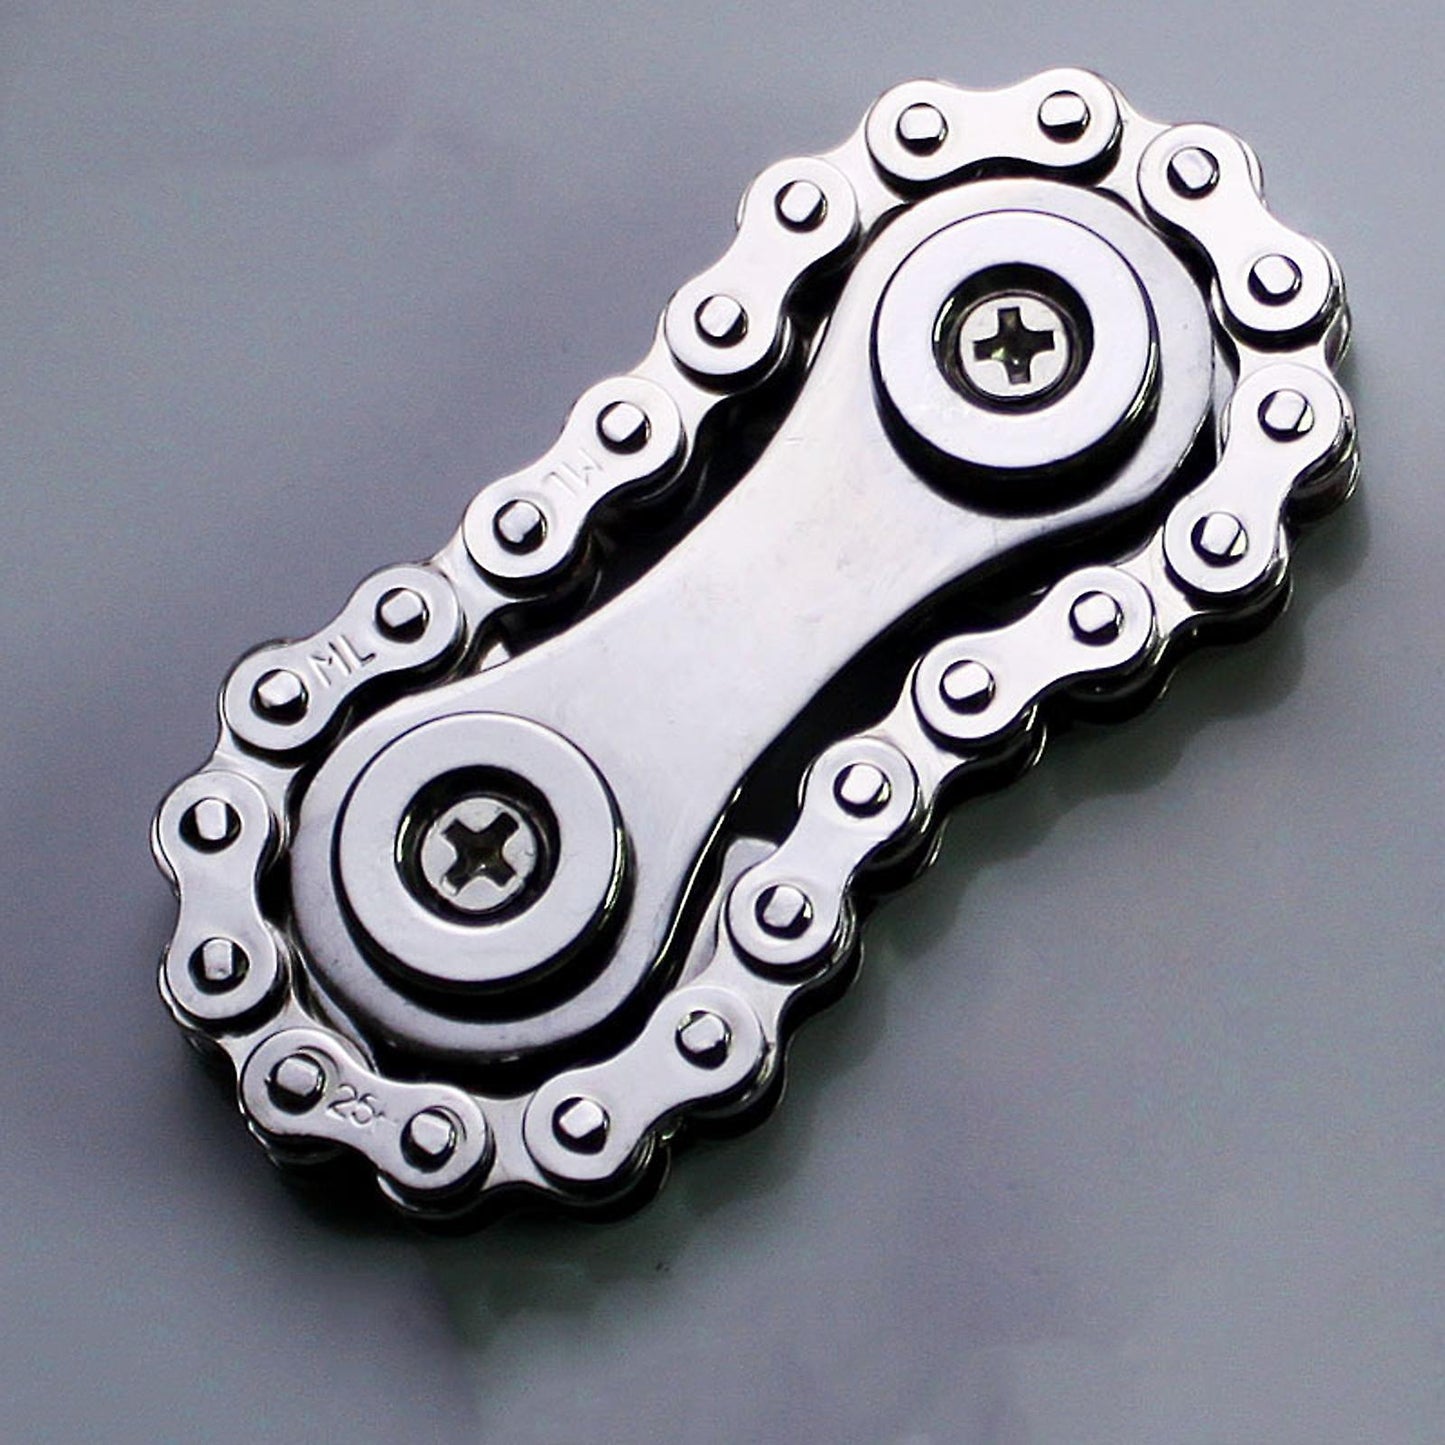 Bike Chain Fidget Spinner - Metallic Stress Relief Toy - Silver